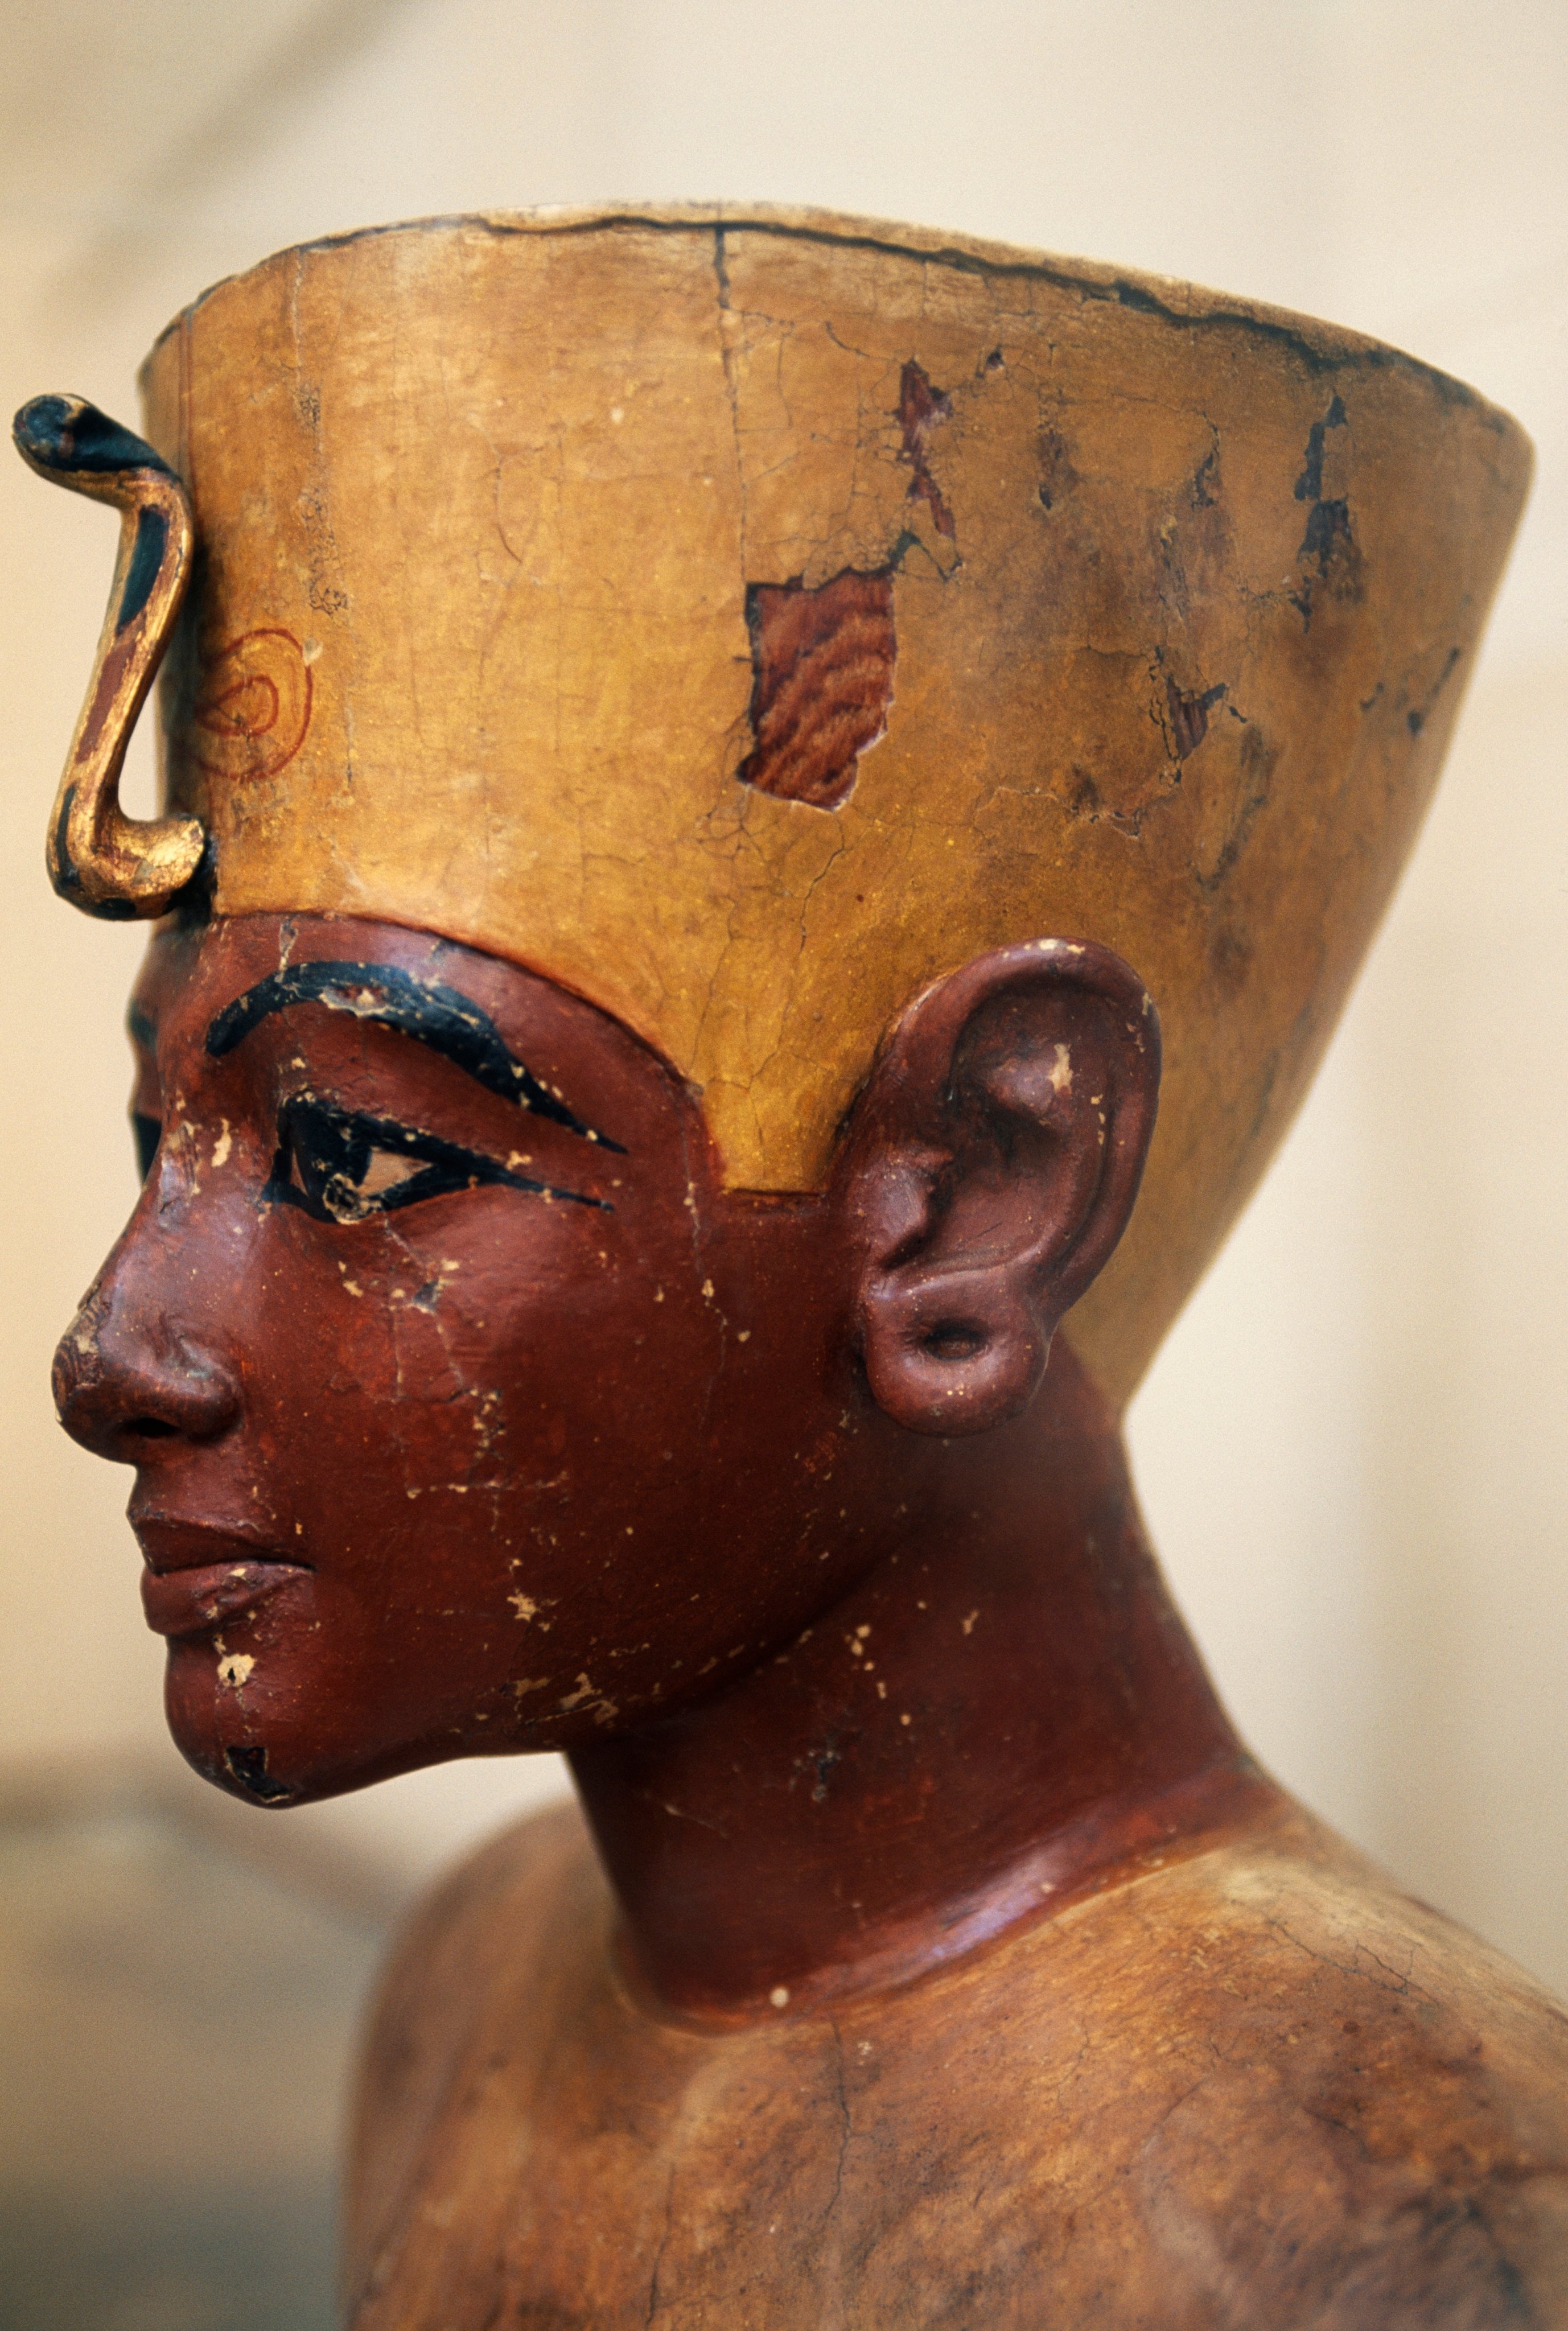 Há 99 anos, a 16 de fevereiro de 1923, foi aberto o túmulo do faraó egípcio Tutankhamon